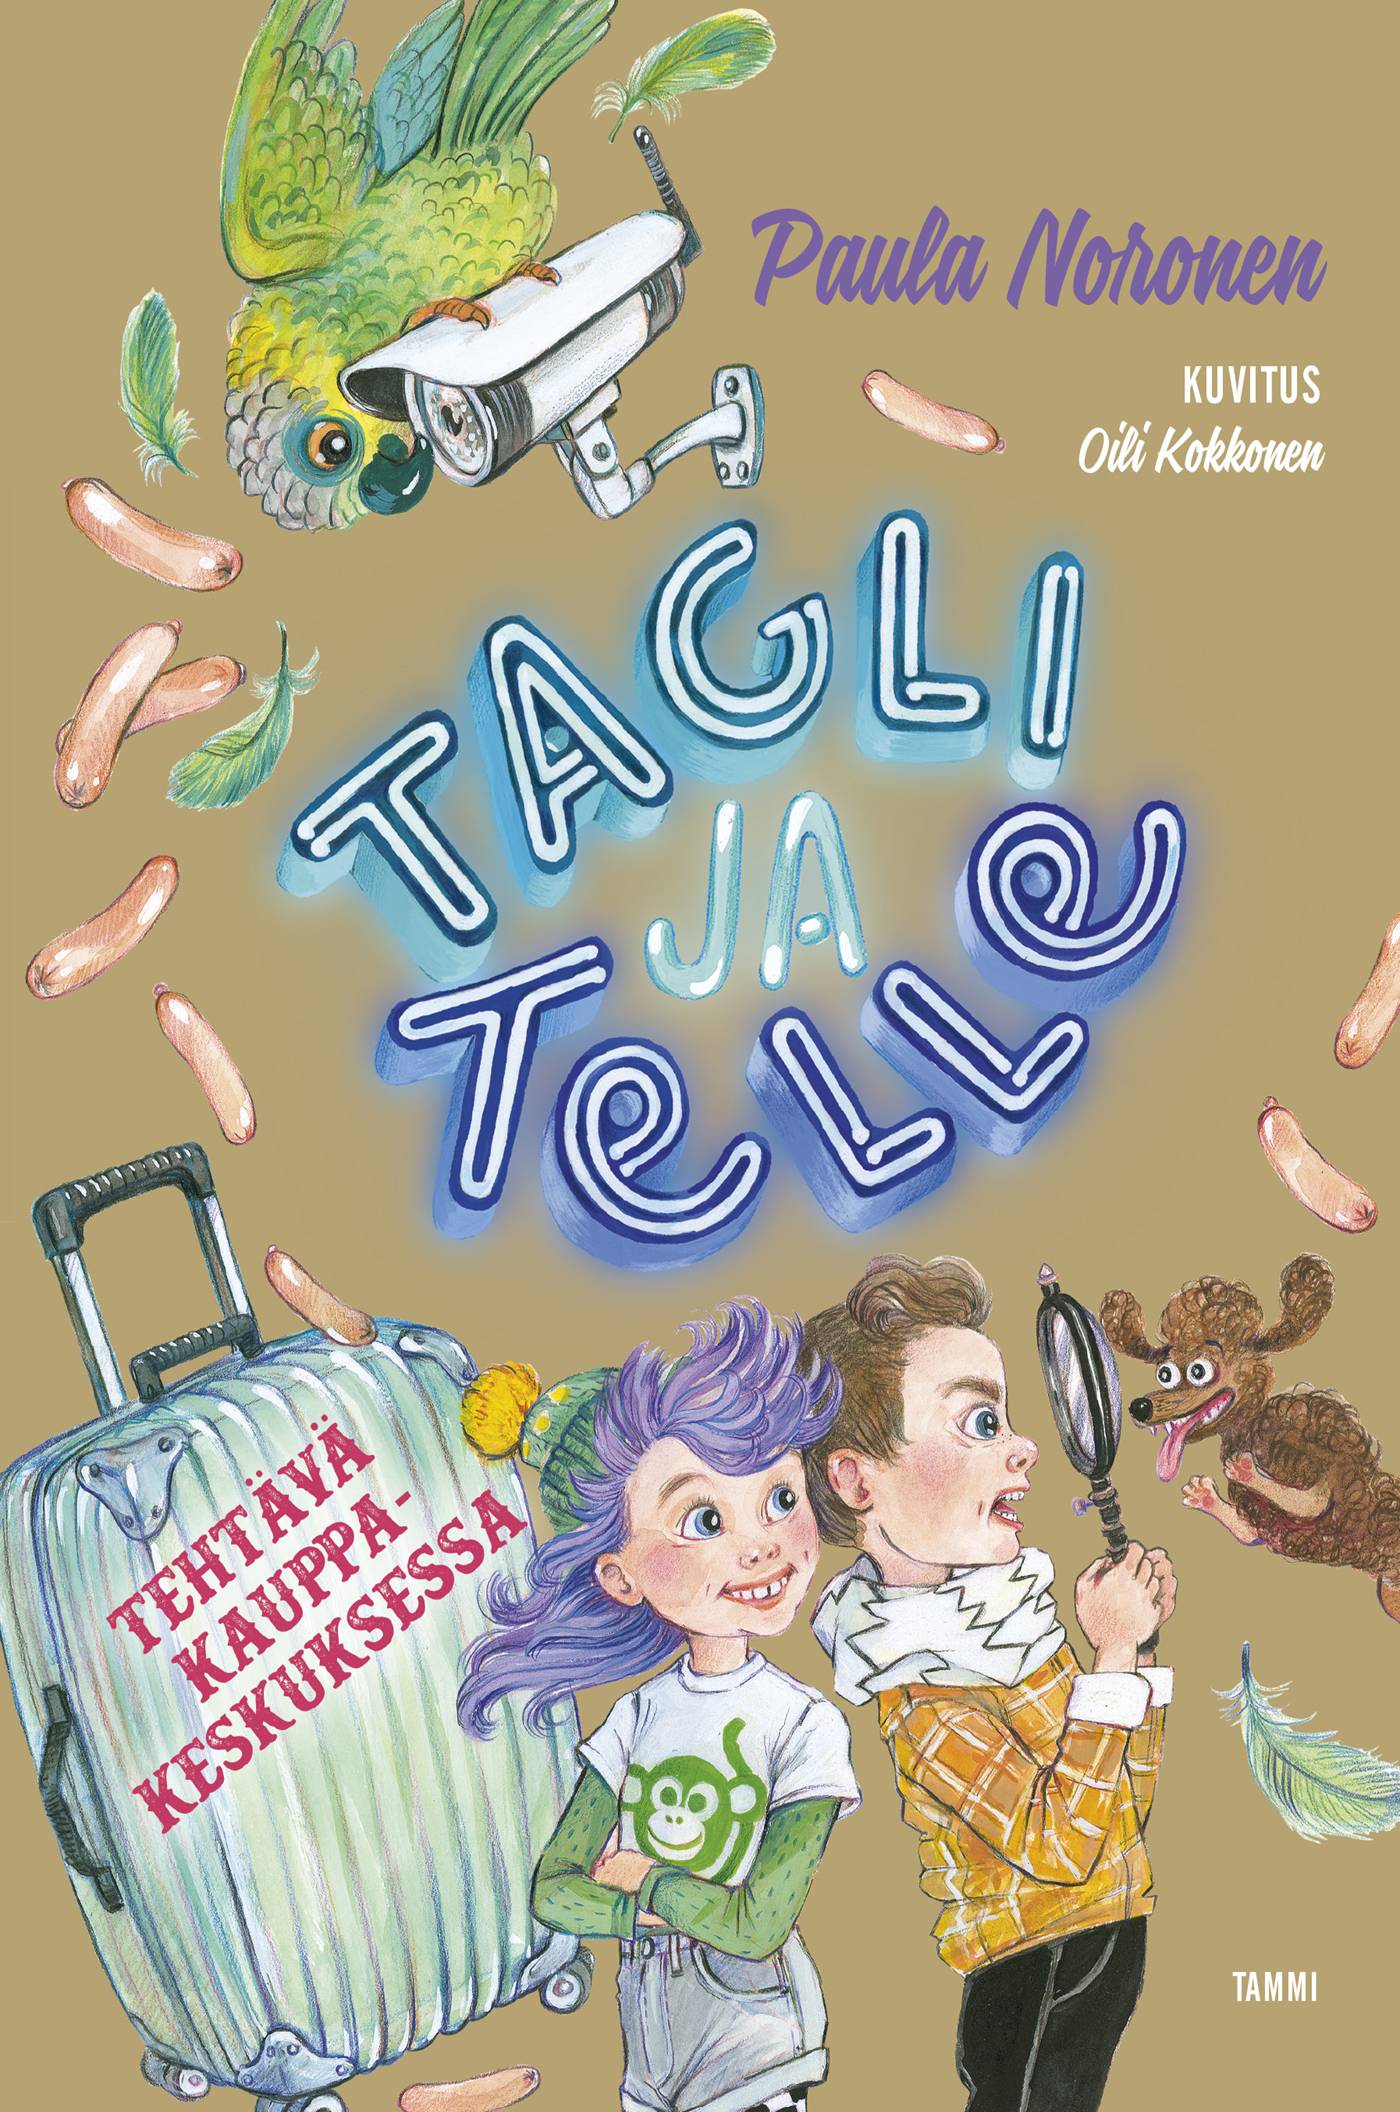 Tagli ja Telle : tehtävä kauppakeskuksessa